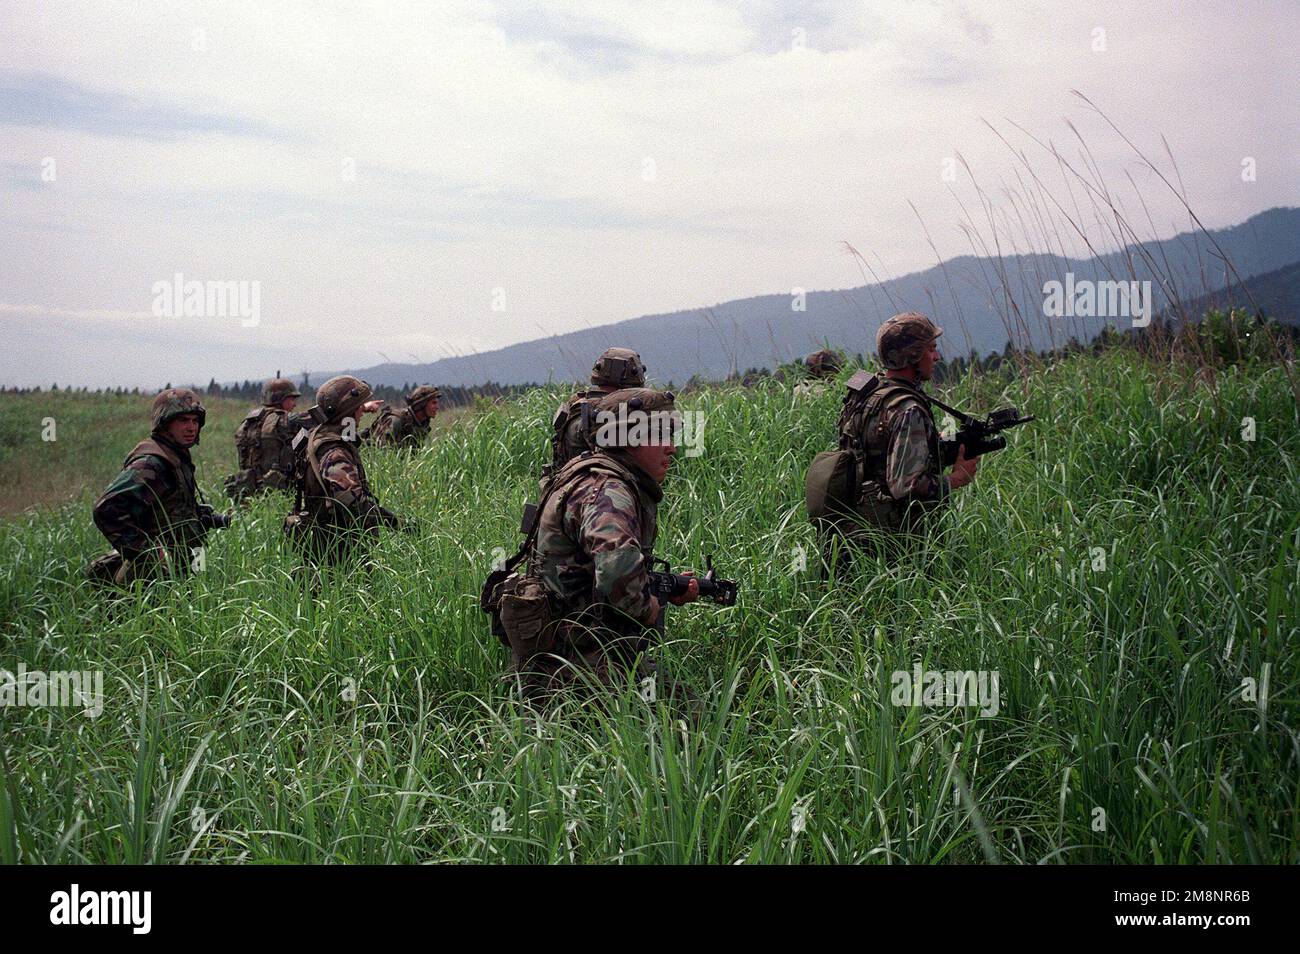 Marines bewaffnet mit M16 und tragen getarnte Ermüdungsstücke aus India Battery, 3. Bataillon, 12. Marines, 29 Palmen, Kalifornien, Patrouillieren Sie auf einem hohen Grasfeld am Fuße des Fuji. Basis: Berg Fuji Land: Japan (JPN) Stockfoto